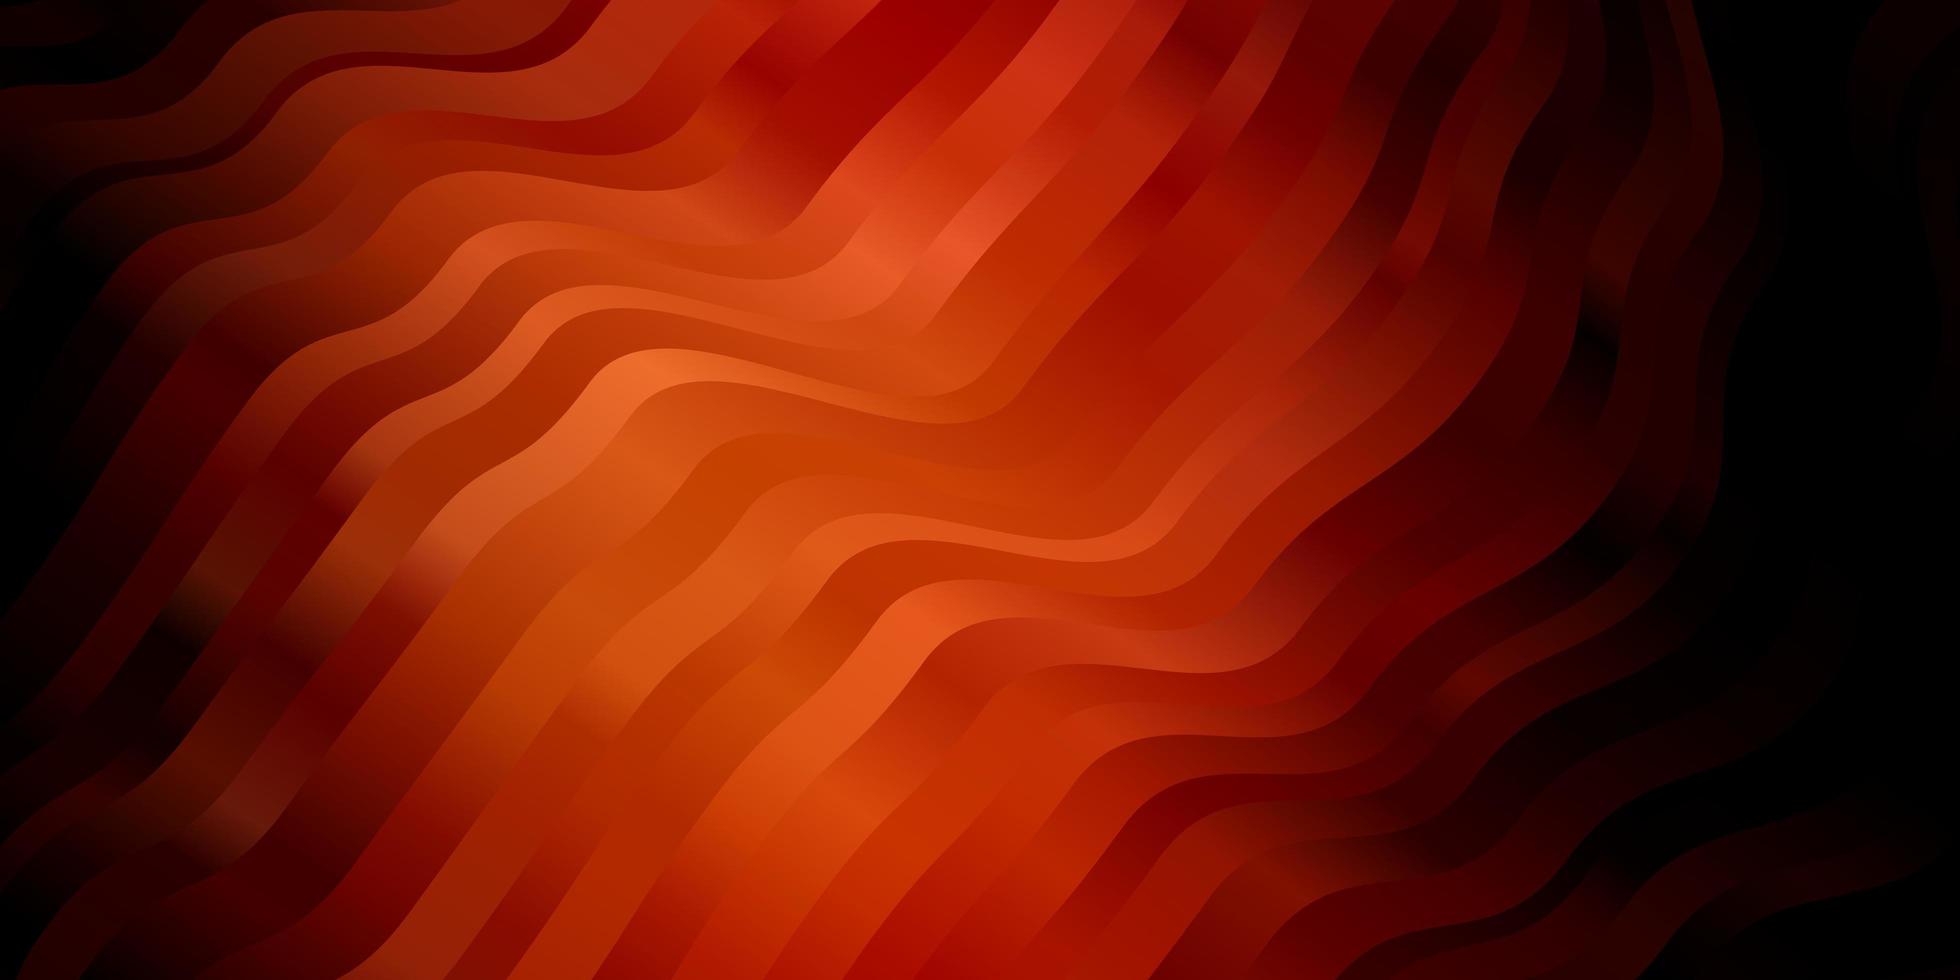 fundo vector vermelho escuro com linhas irônicas. ilustração em estilo abstrato com gradiente curvado. padrão para livretos de negócios, folhetos